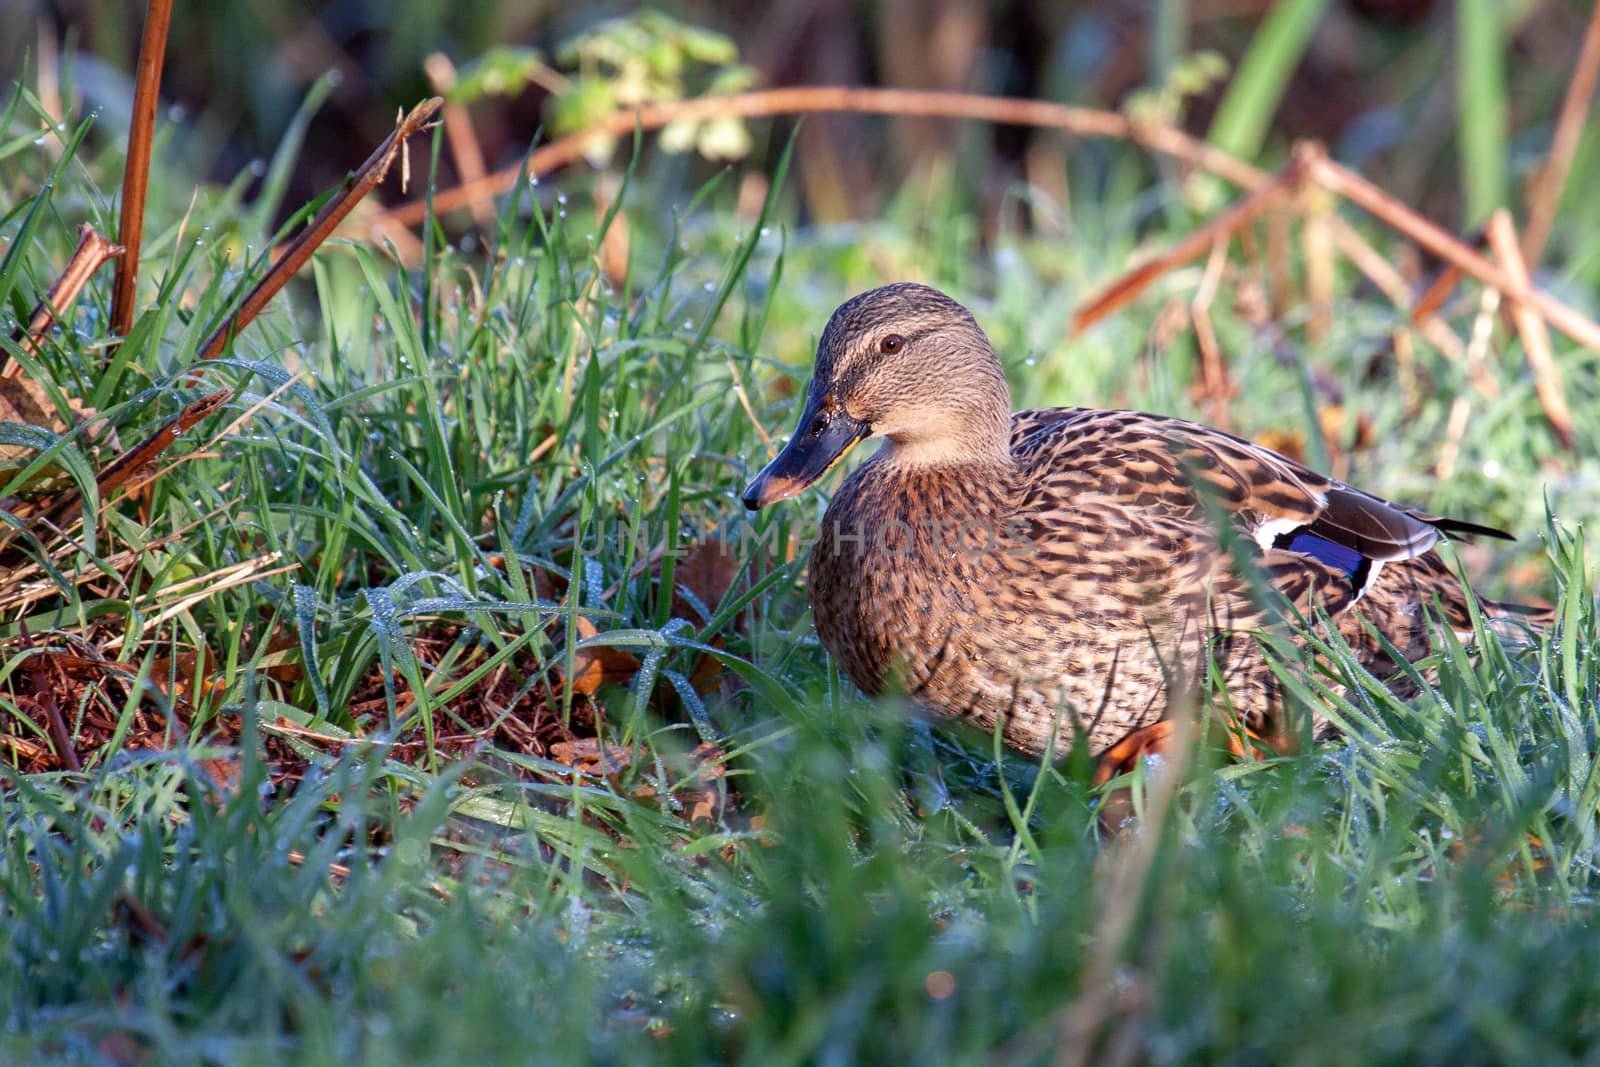 Female Mallard walking through dew laden grass by phil_bird